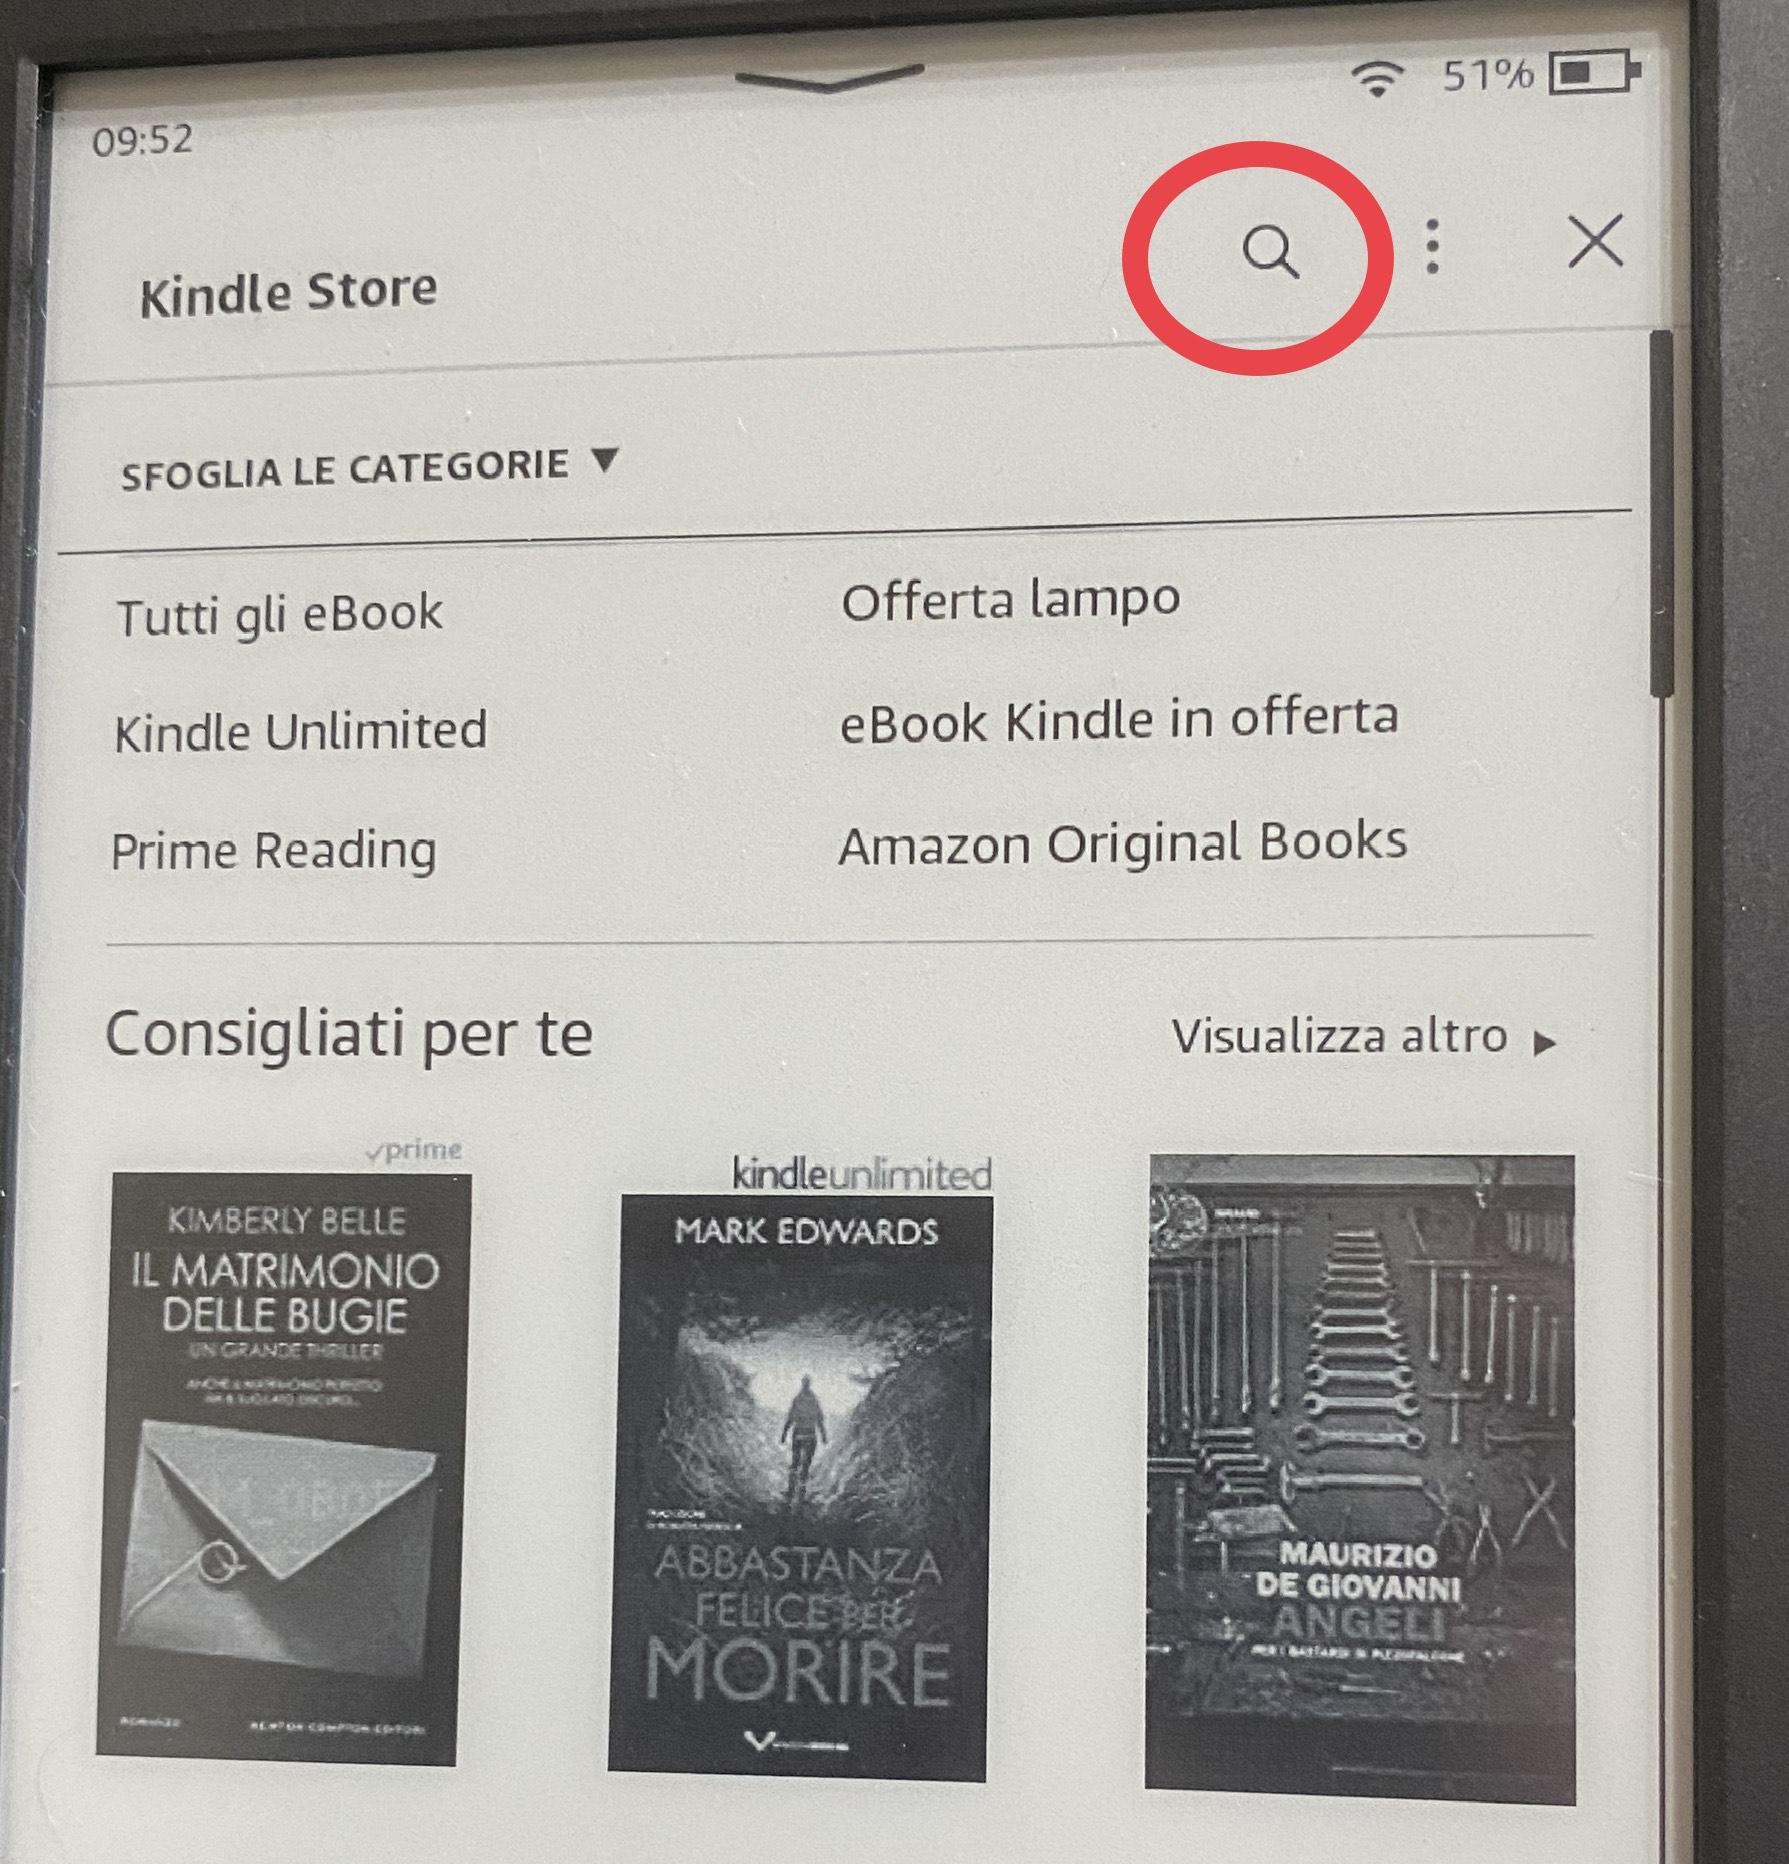 Sui cataloghi Kindle fanno elenco per autore?